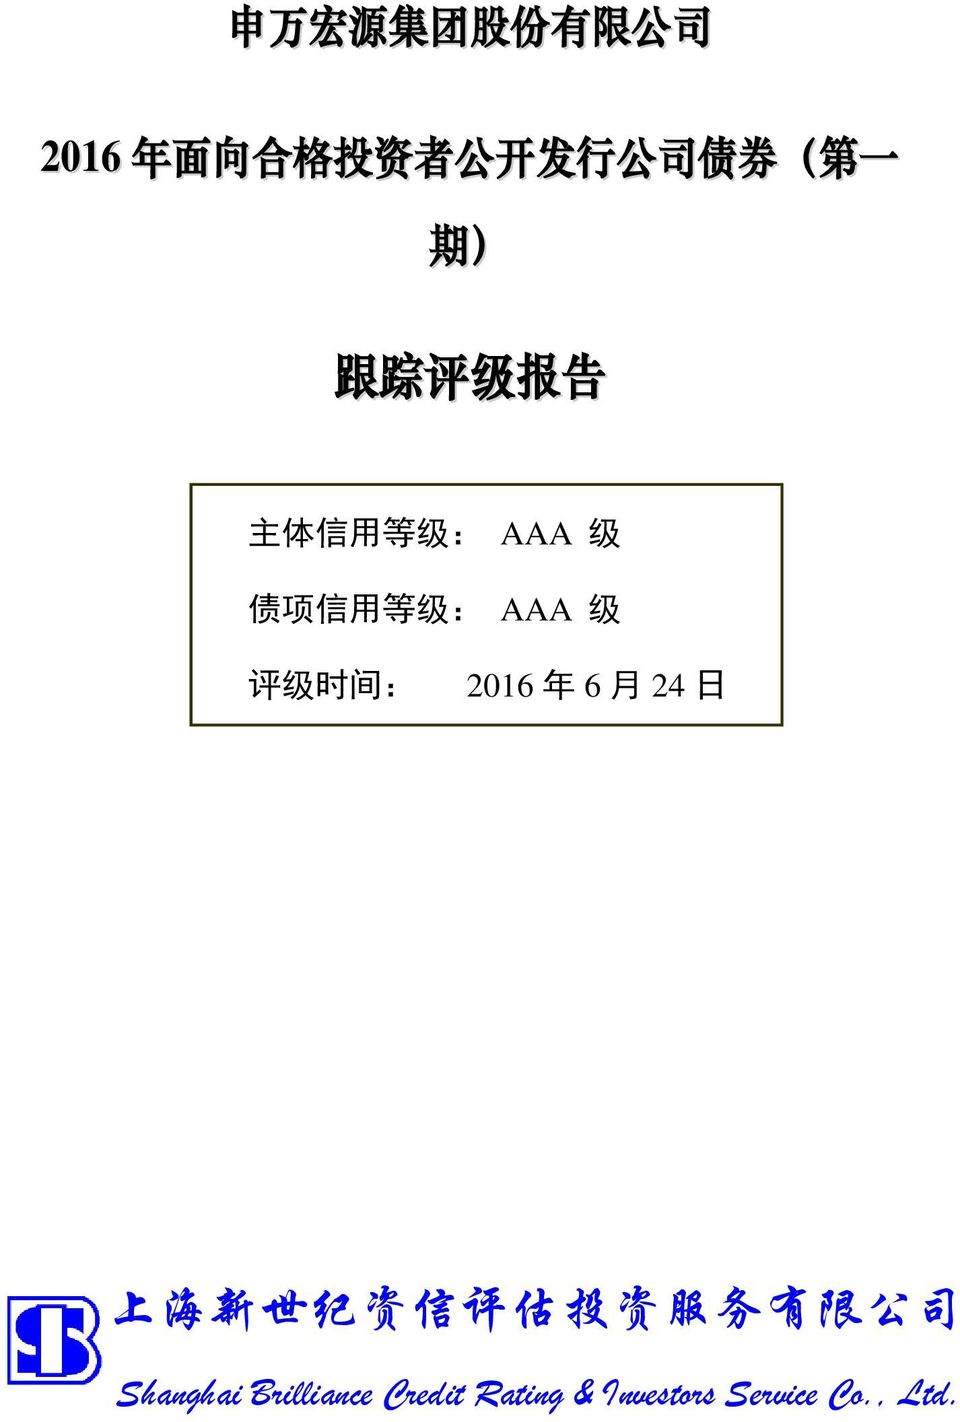 债 项 信 用 等 级 : AAA 级 评 级 时 间 : 2016 年 6 月 24 日 上 海 新 世 纪 资 信 评 估 投 资 服 务